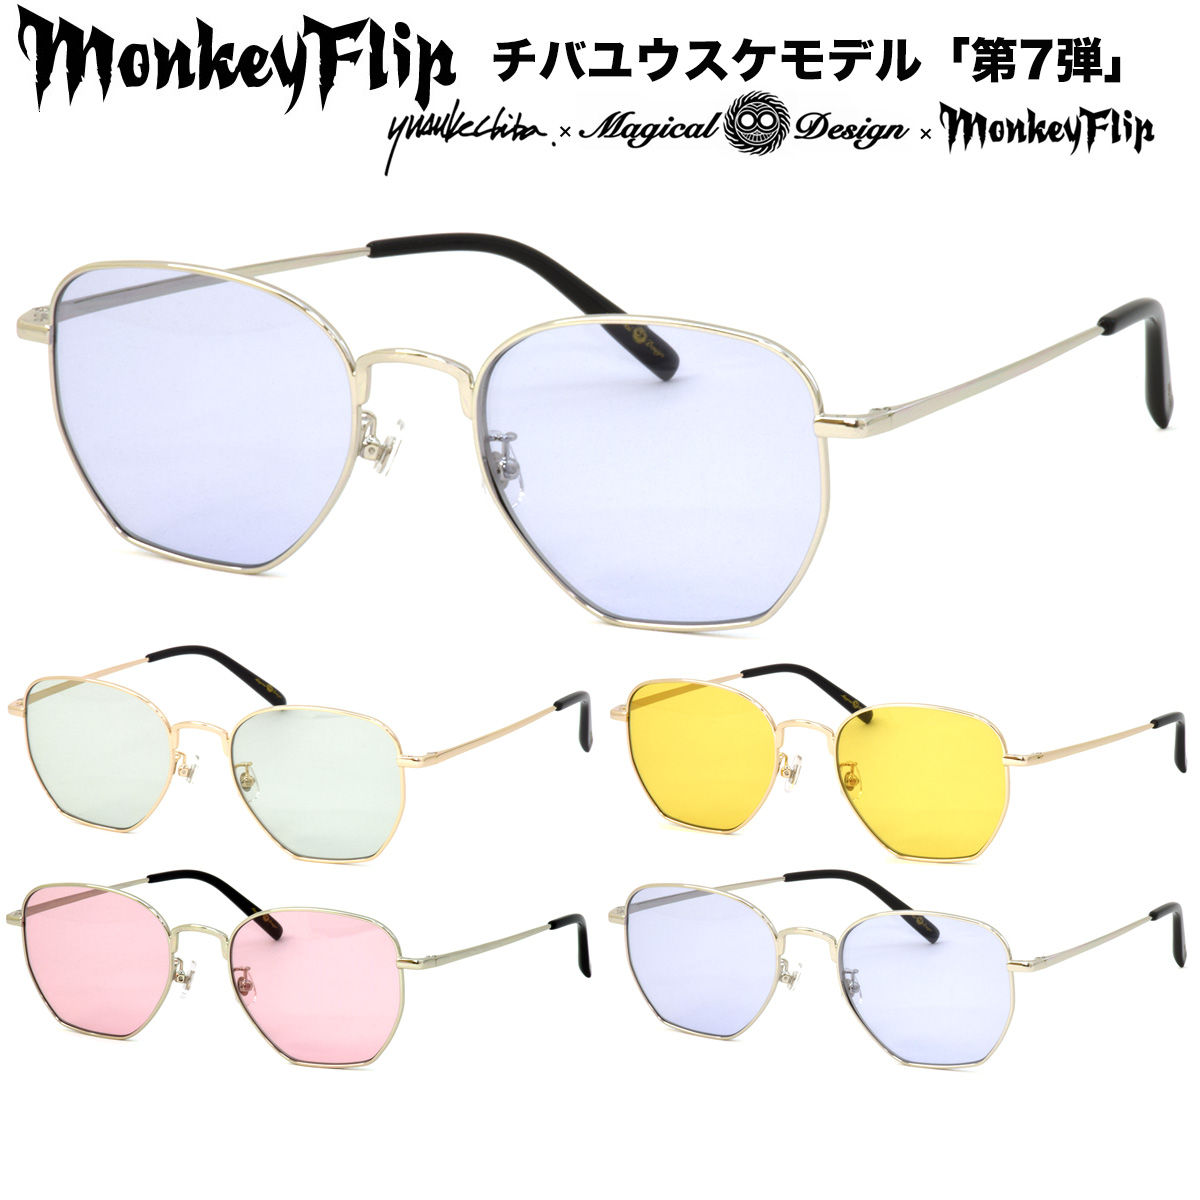 楽天市場】【即納OK!!】Monkey Flip 25TH ANNIVERSARY コラボ 